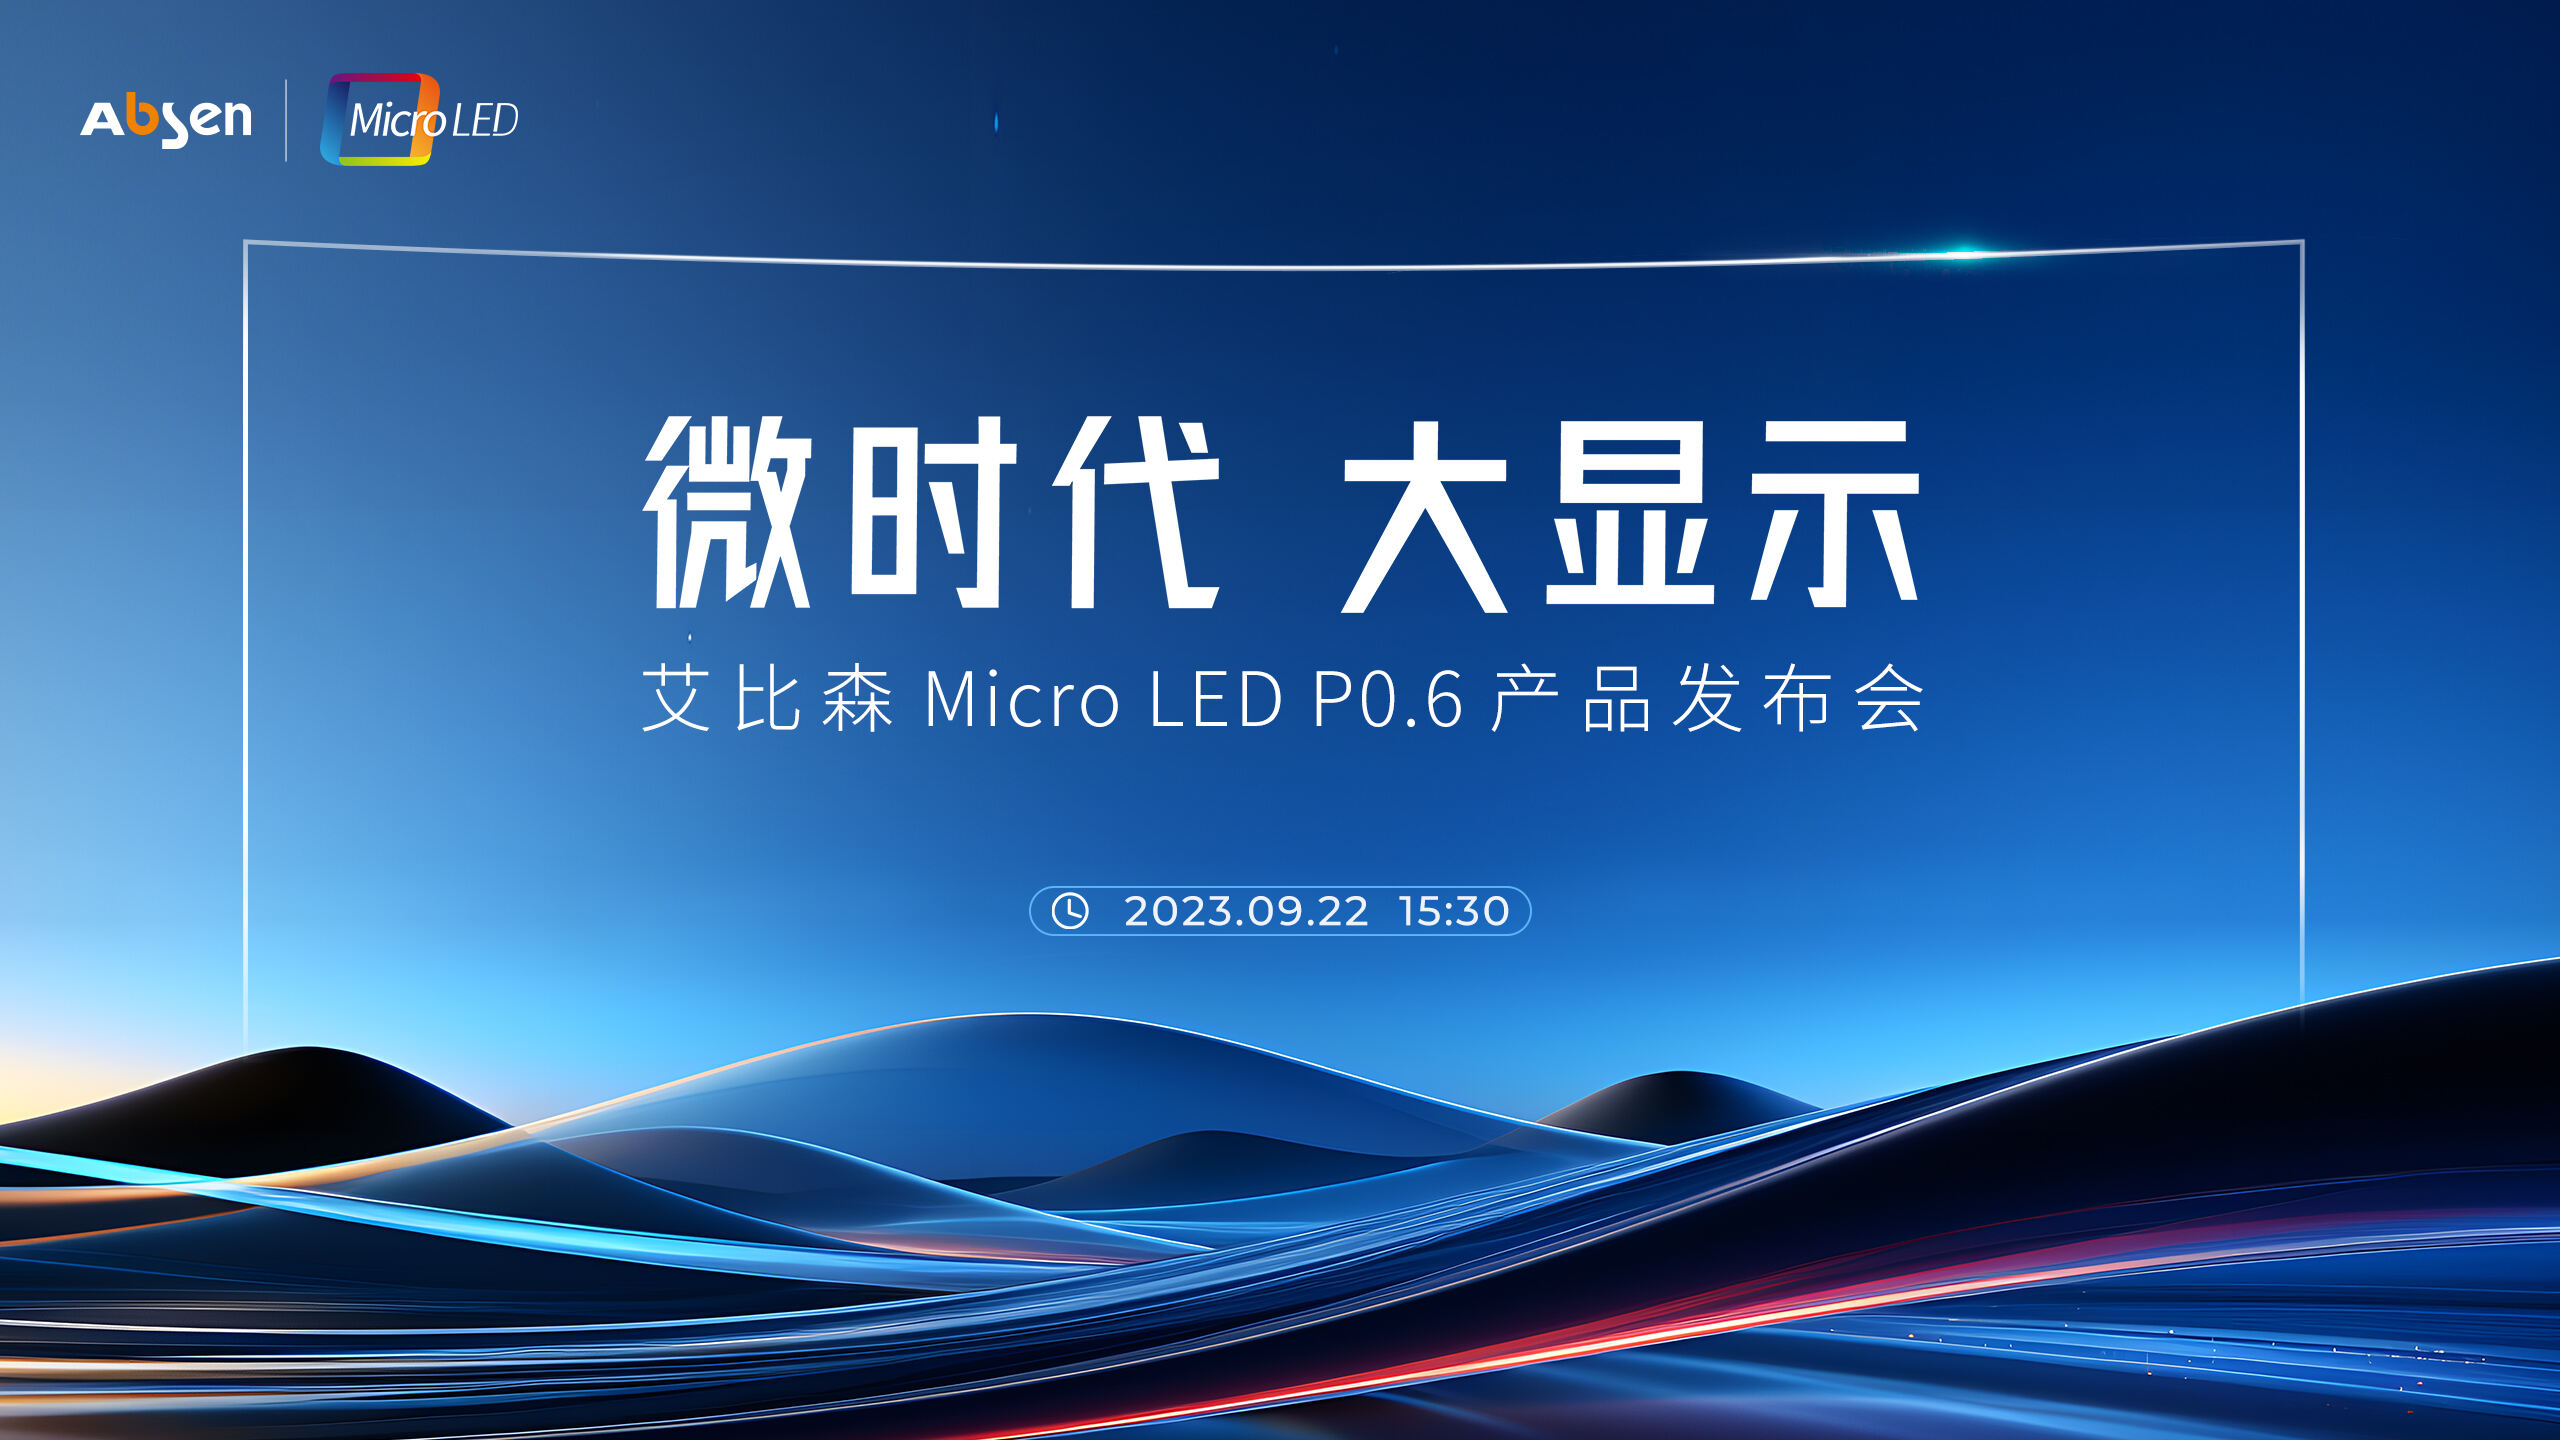 微时代 大显示丨尊龙凯时人生就是博 Micro LED P0.6 产品重磅宣布